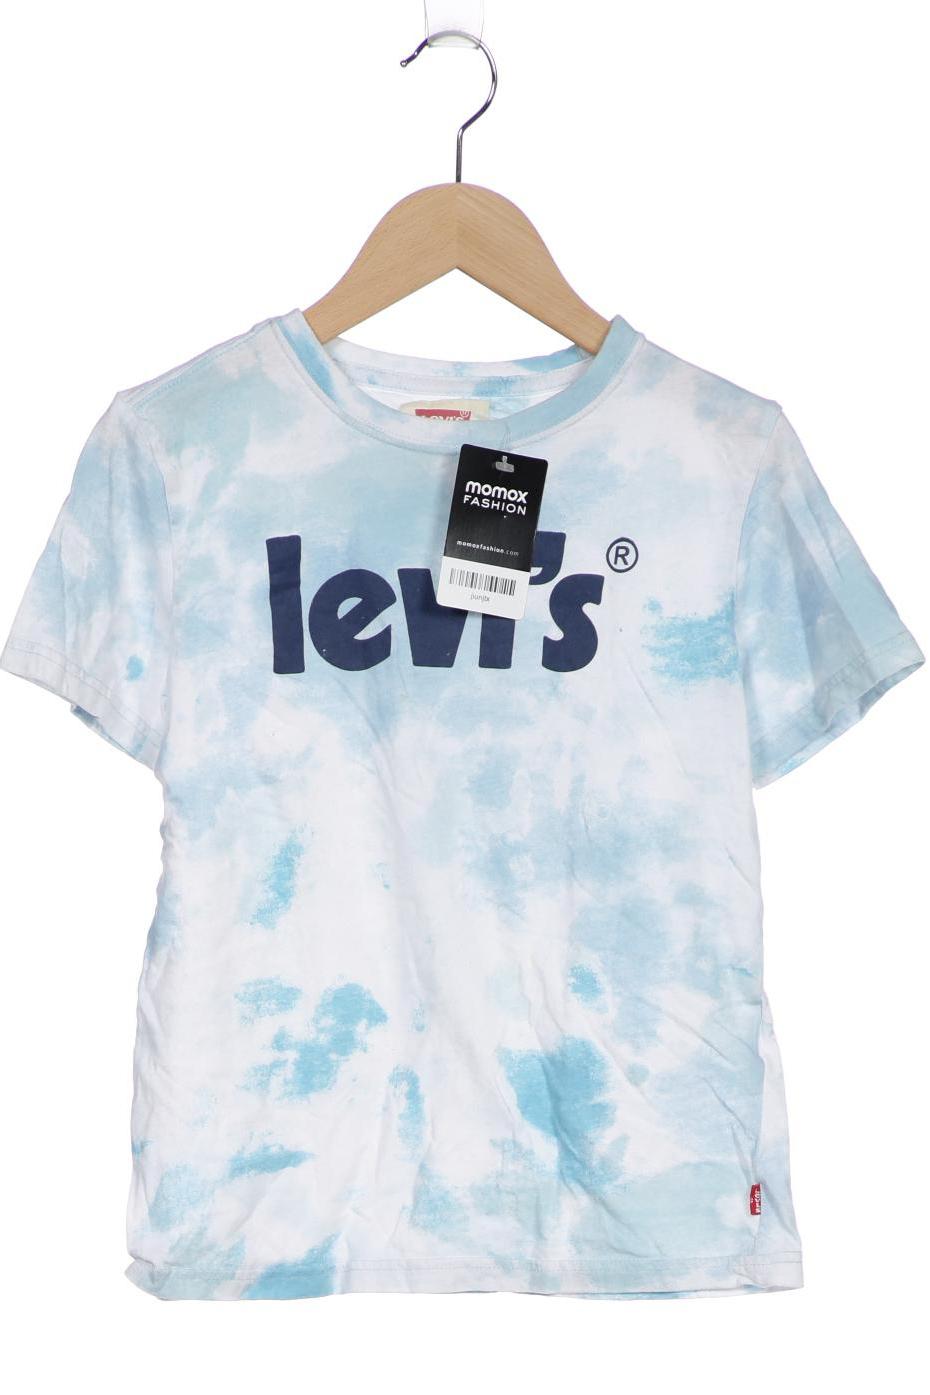 Levis Herren T-Shirt, hellblau, Gr. 152 von Levis